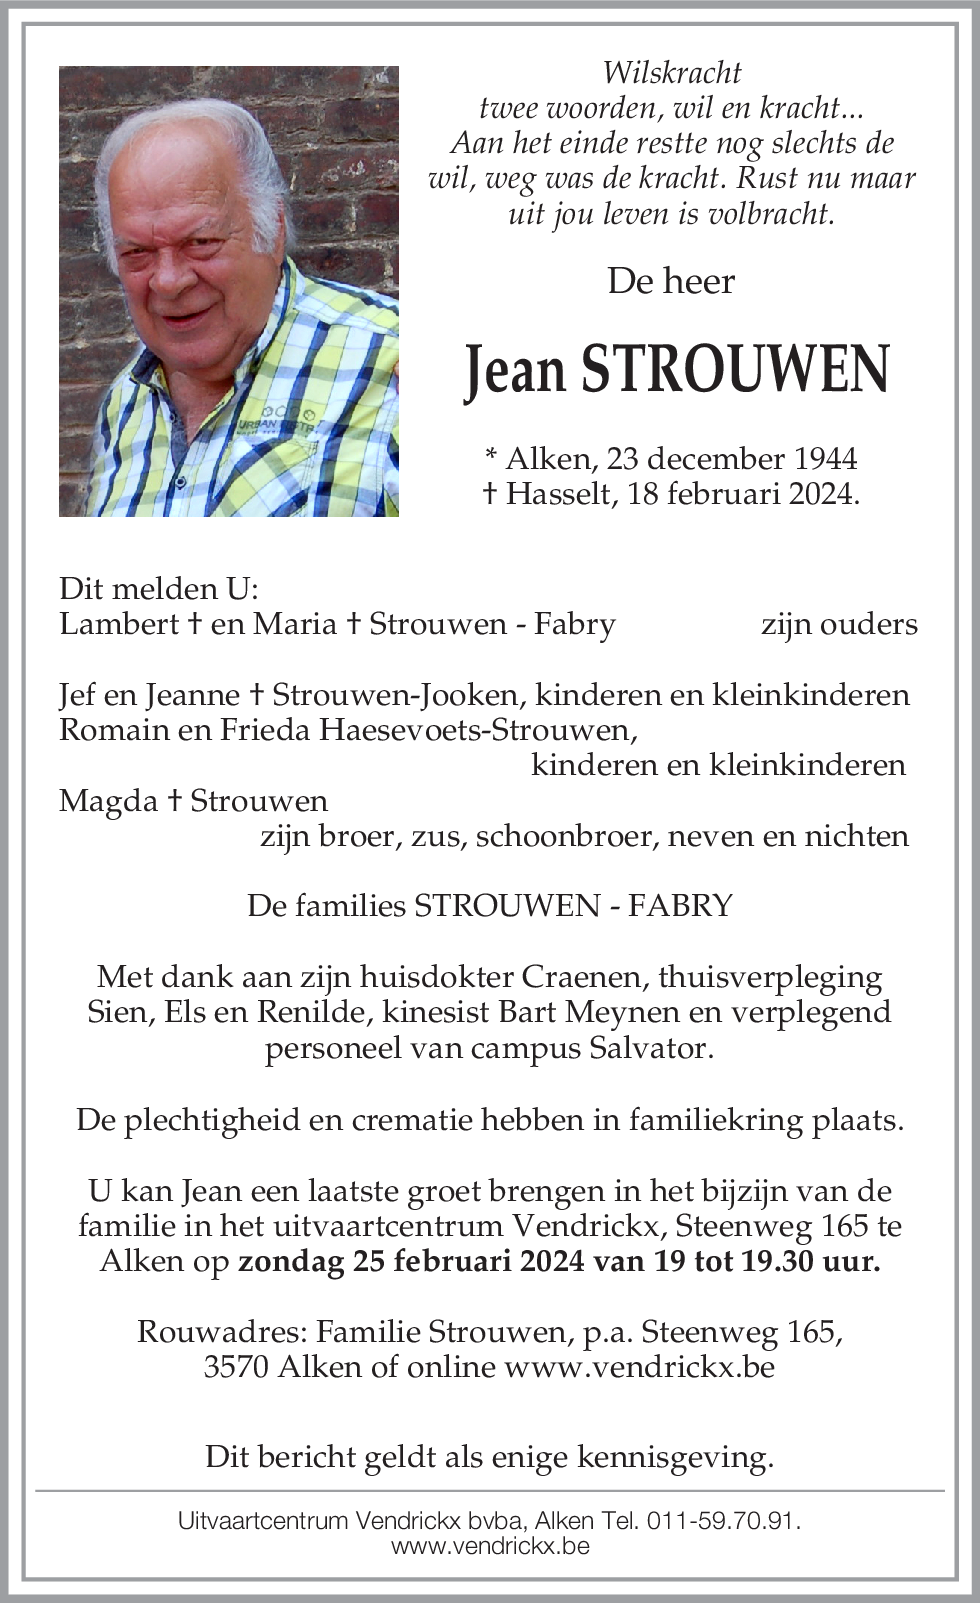 Jean Strouwen